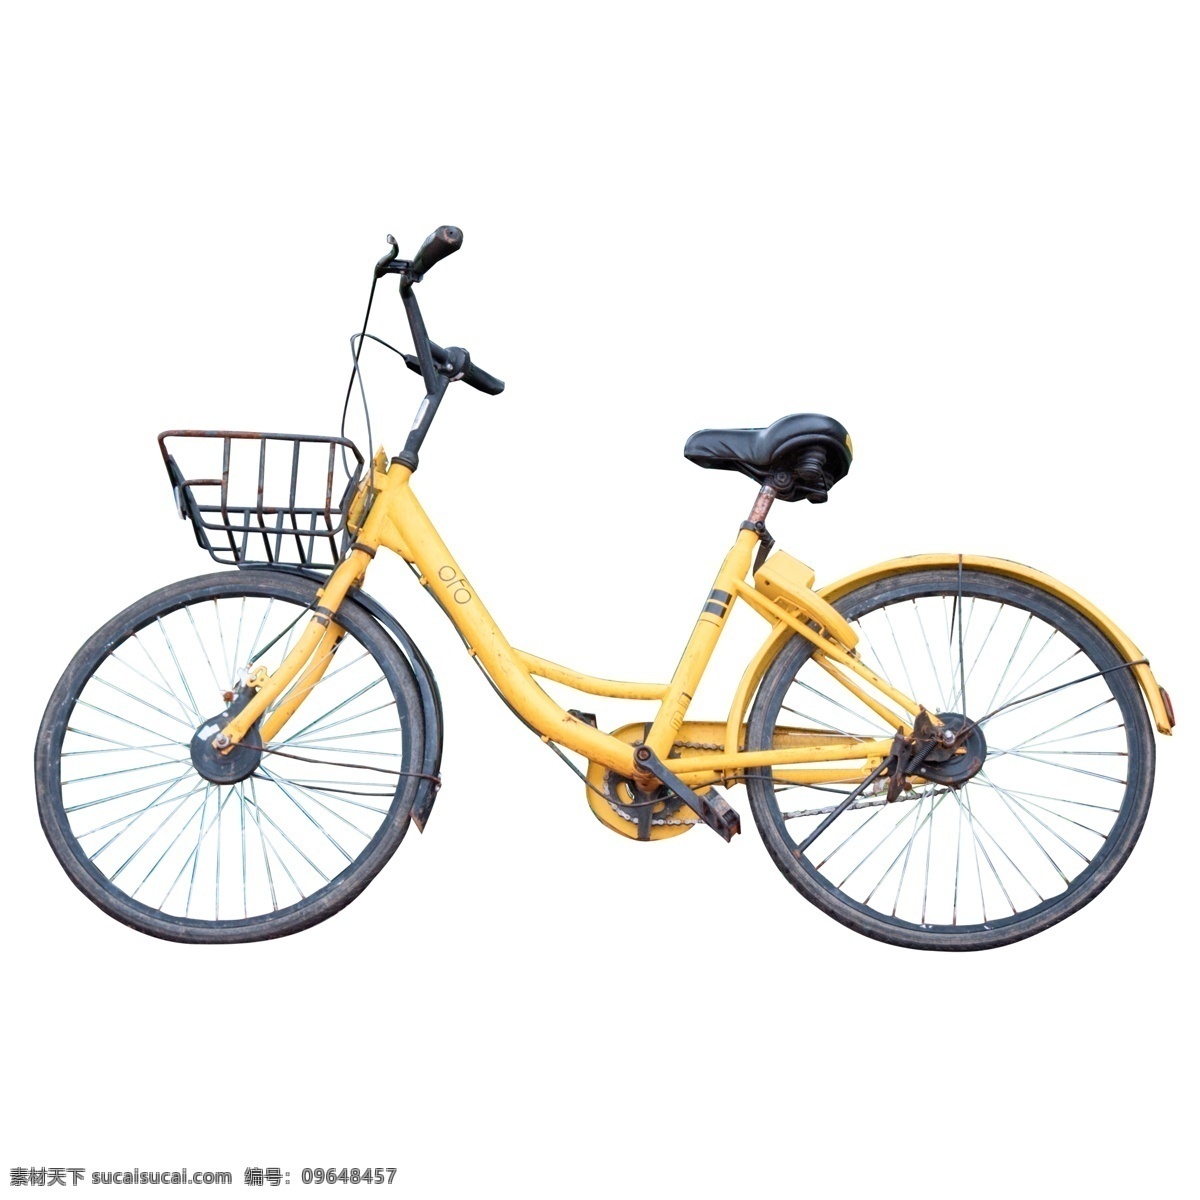 绿色 出行 黄色 共享 单车 自行车 共享单车 扫码单车 共享自行车 黄色自行车 绿色出行 黄色共享单车